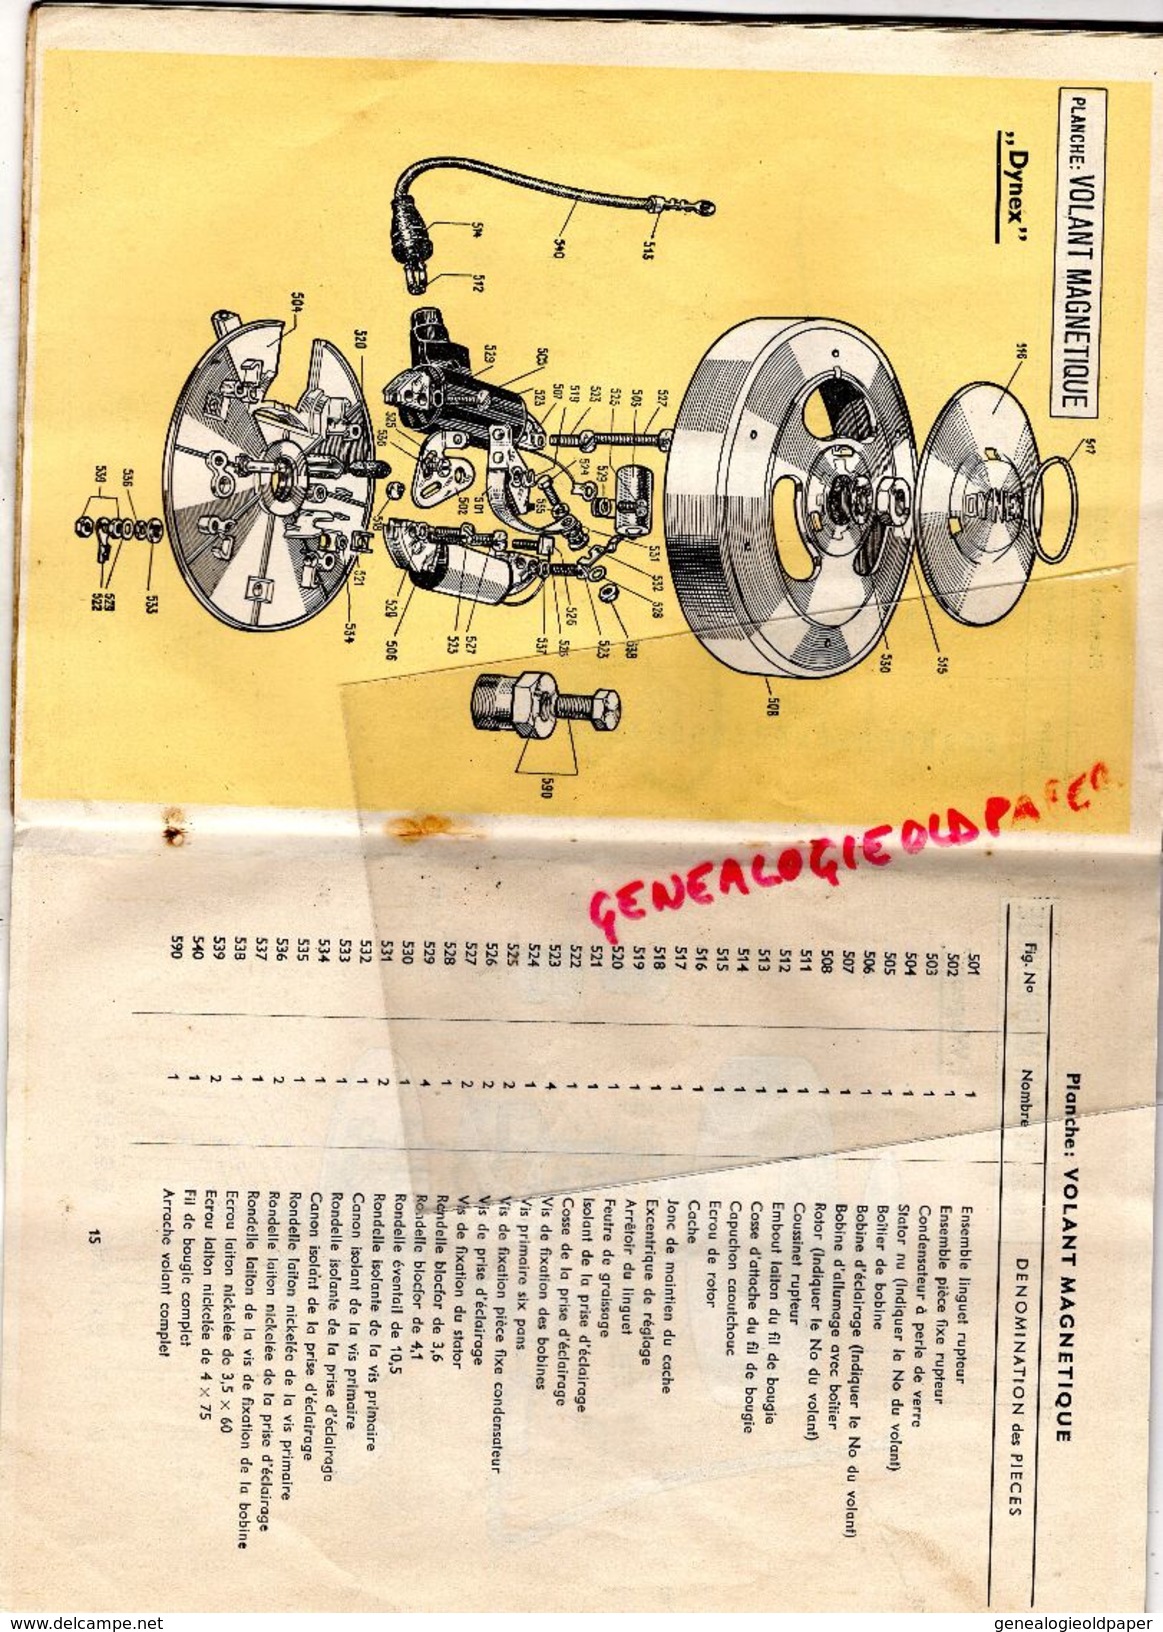 ALLEMAGNE- LE MOTEUR HIMO TYPE 51- FTK- FEINTECHNIK A.G. HOMBURG-SARRE- 1953- - Automobile